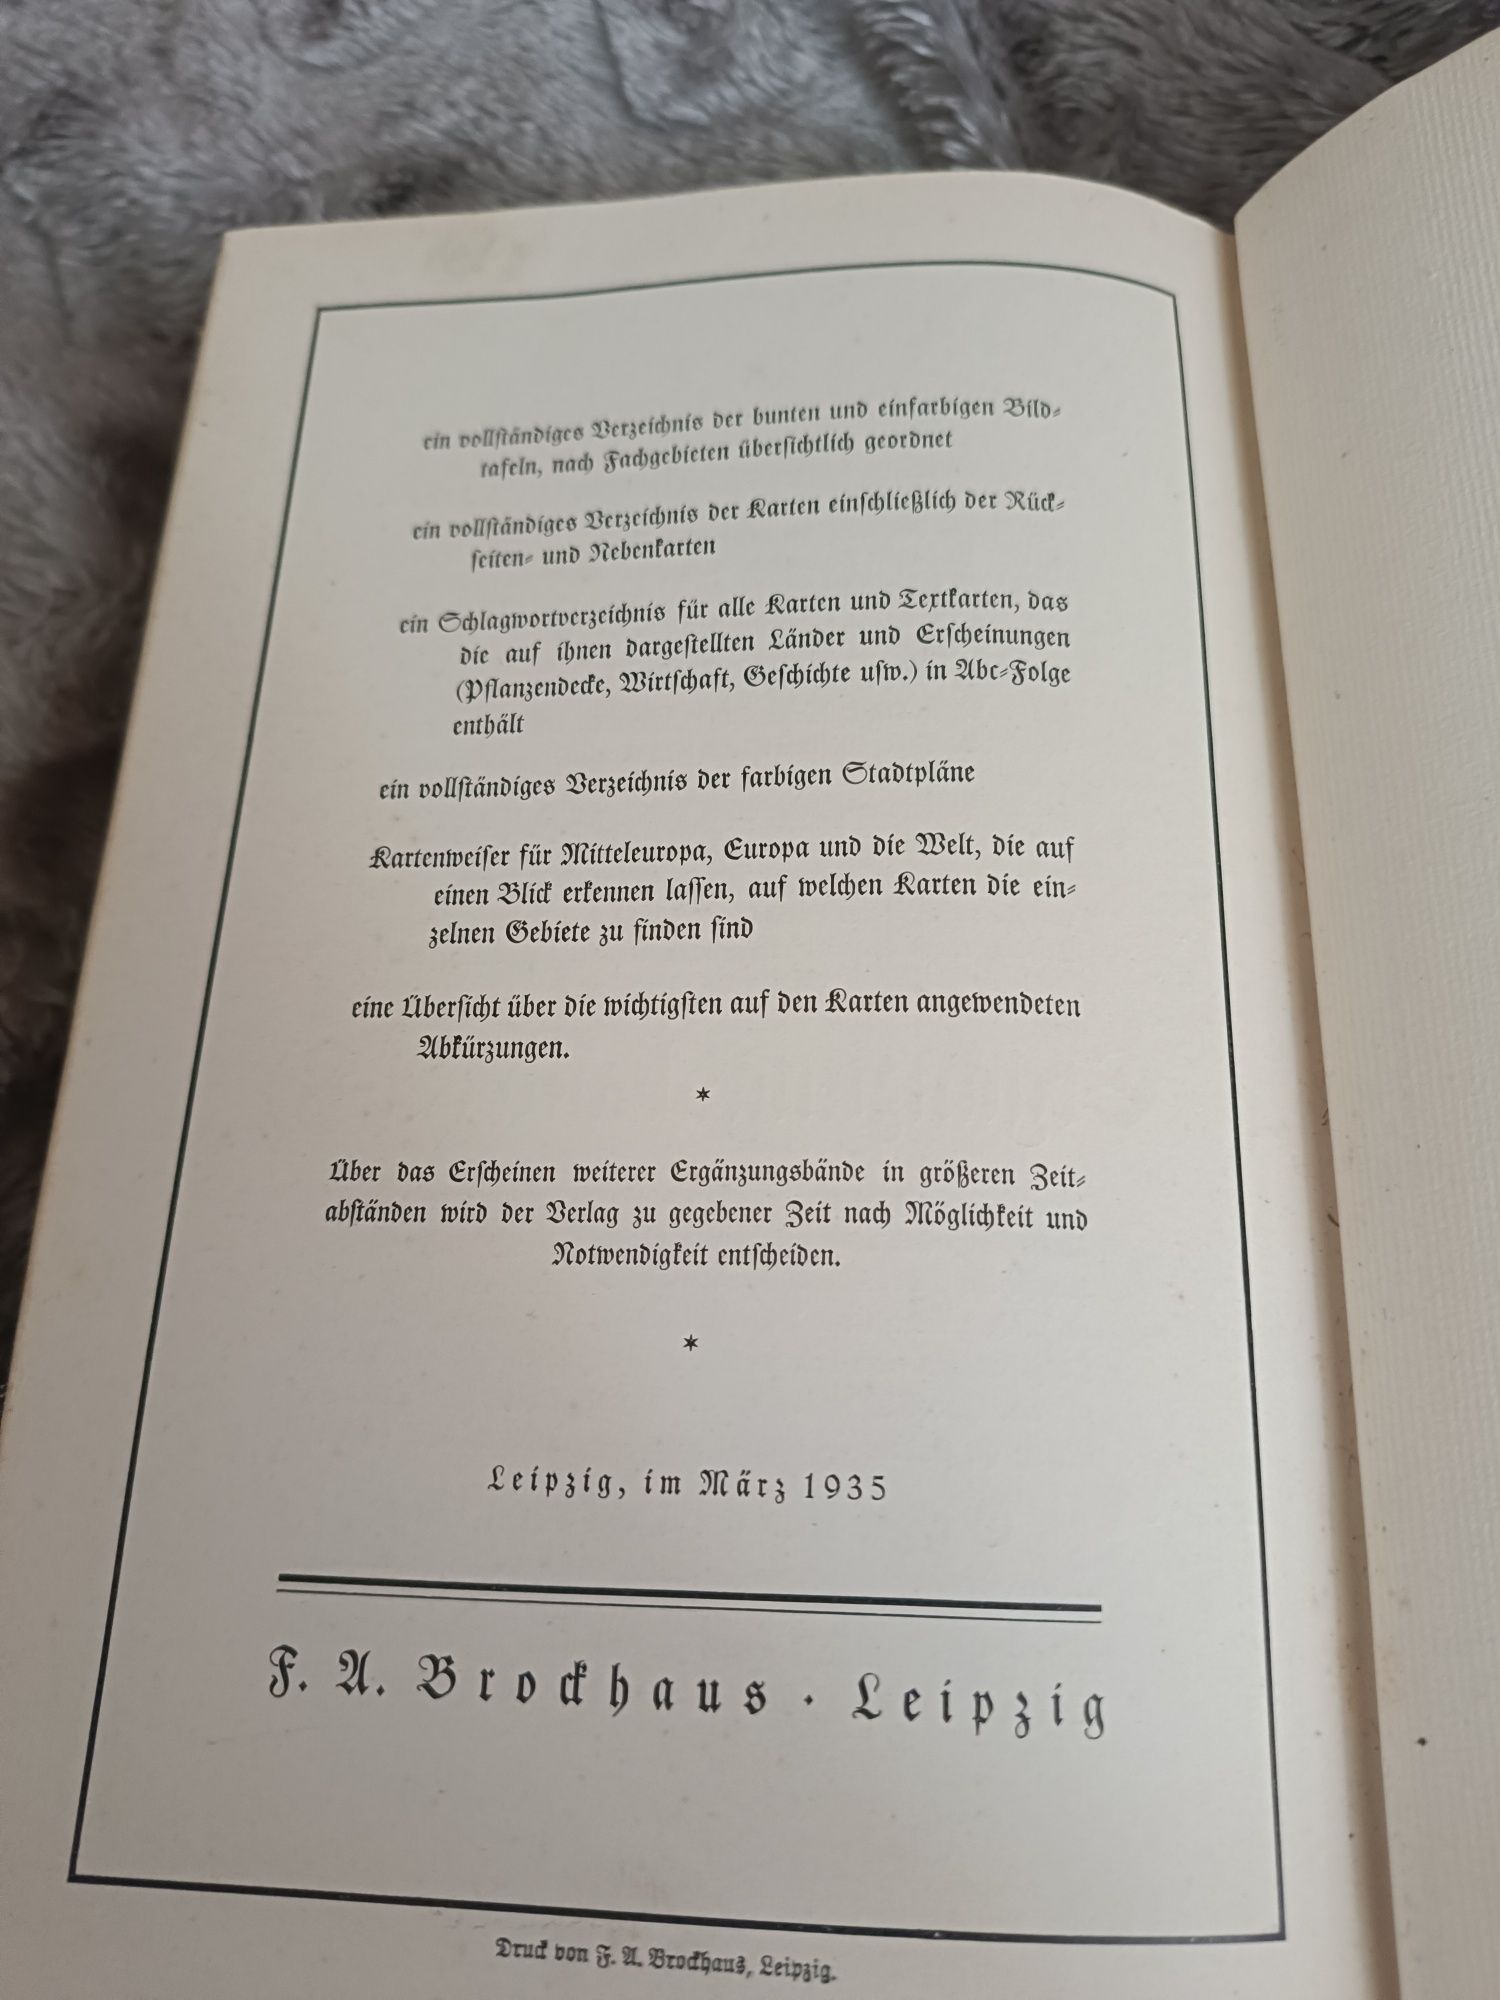 Encyklopedia wiedzy z 1935 w języku niemieckim